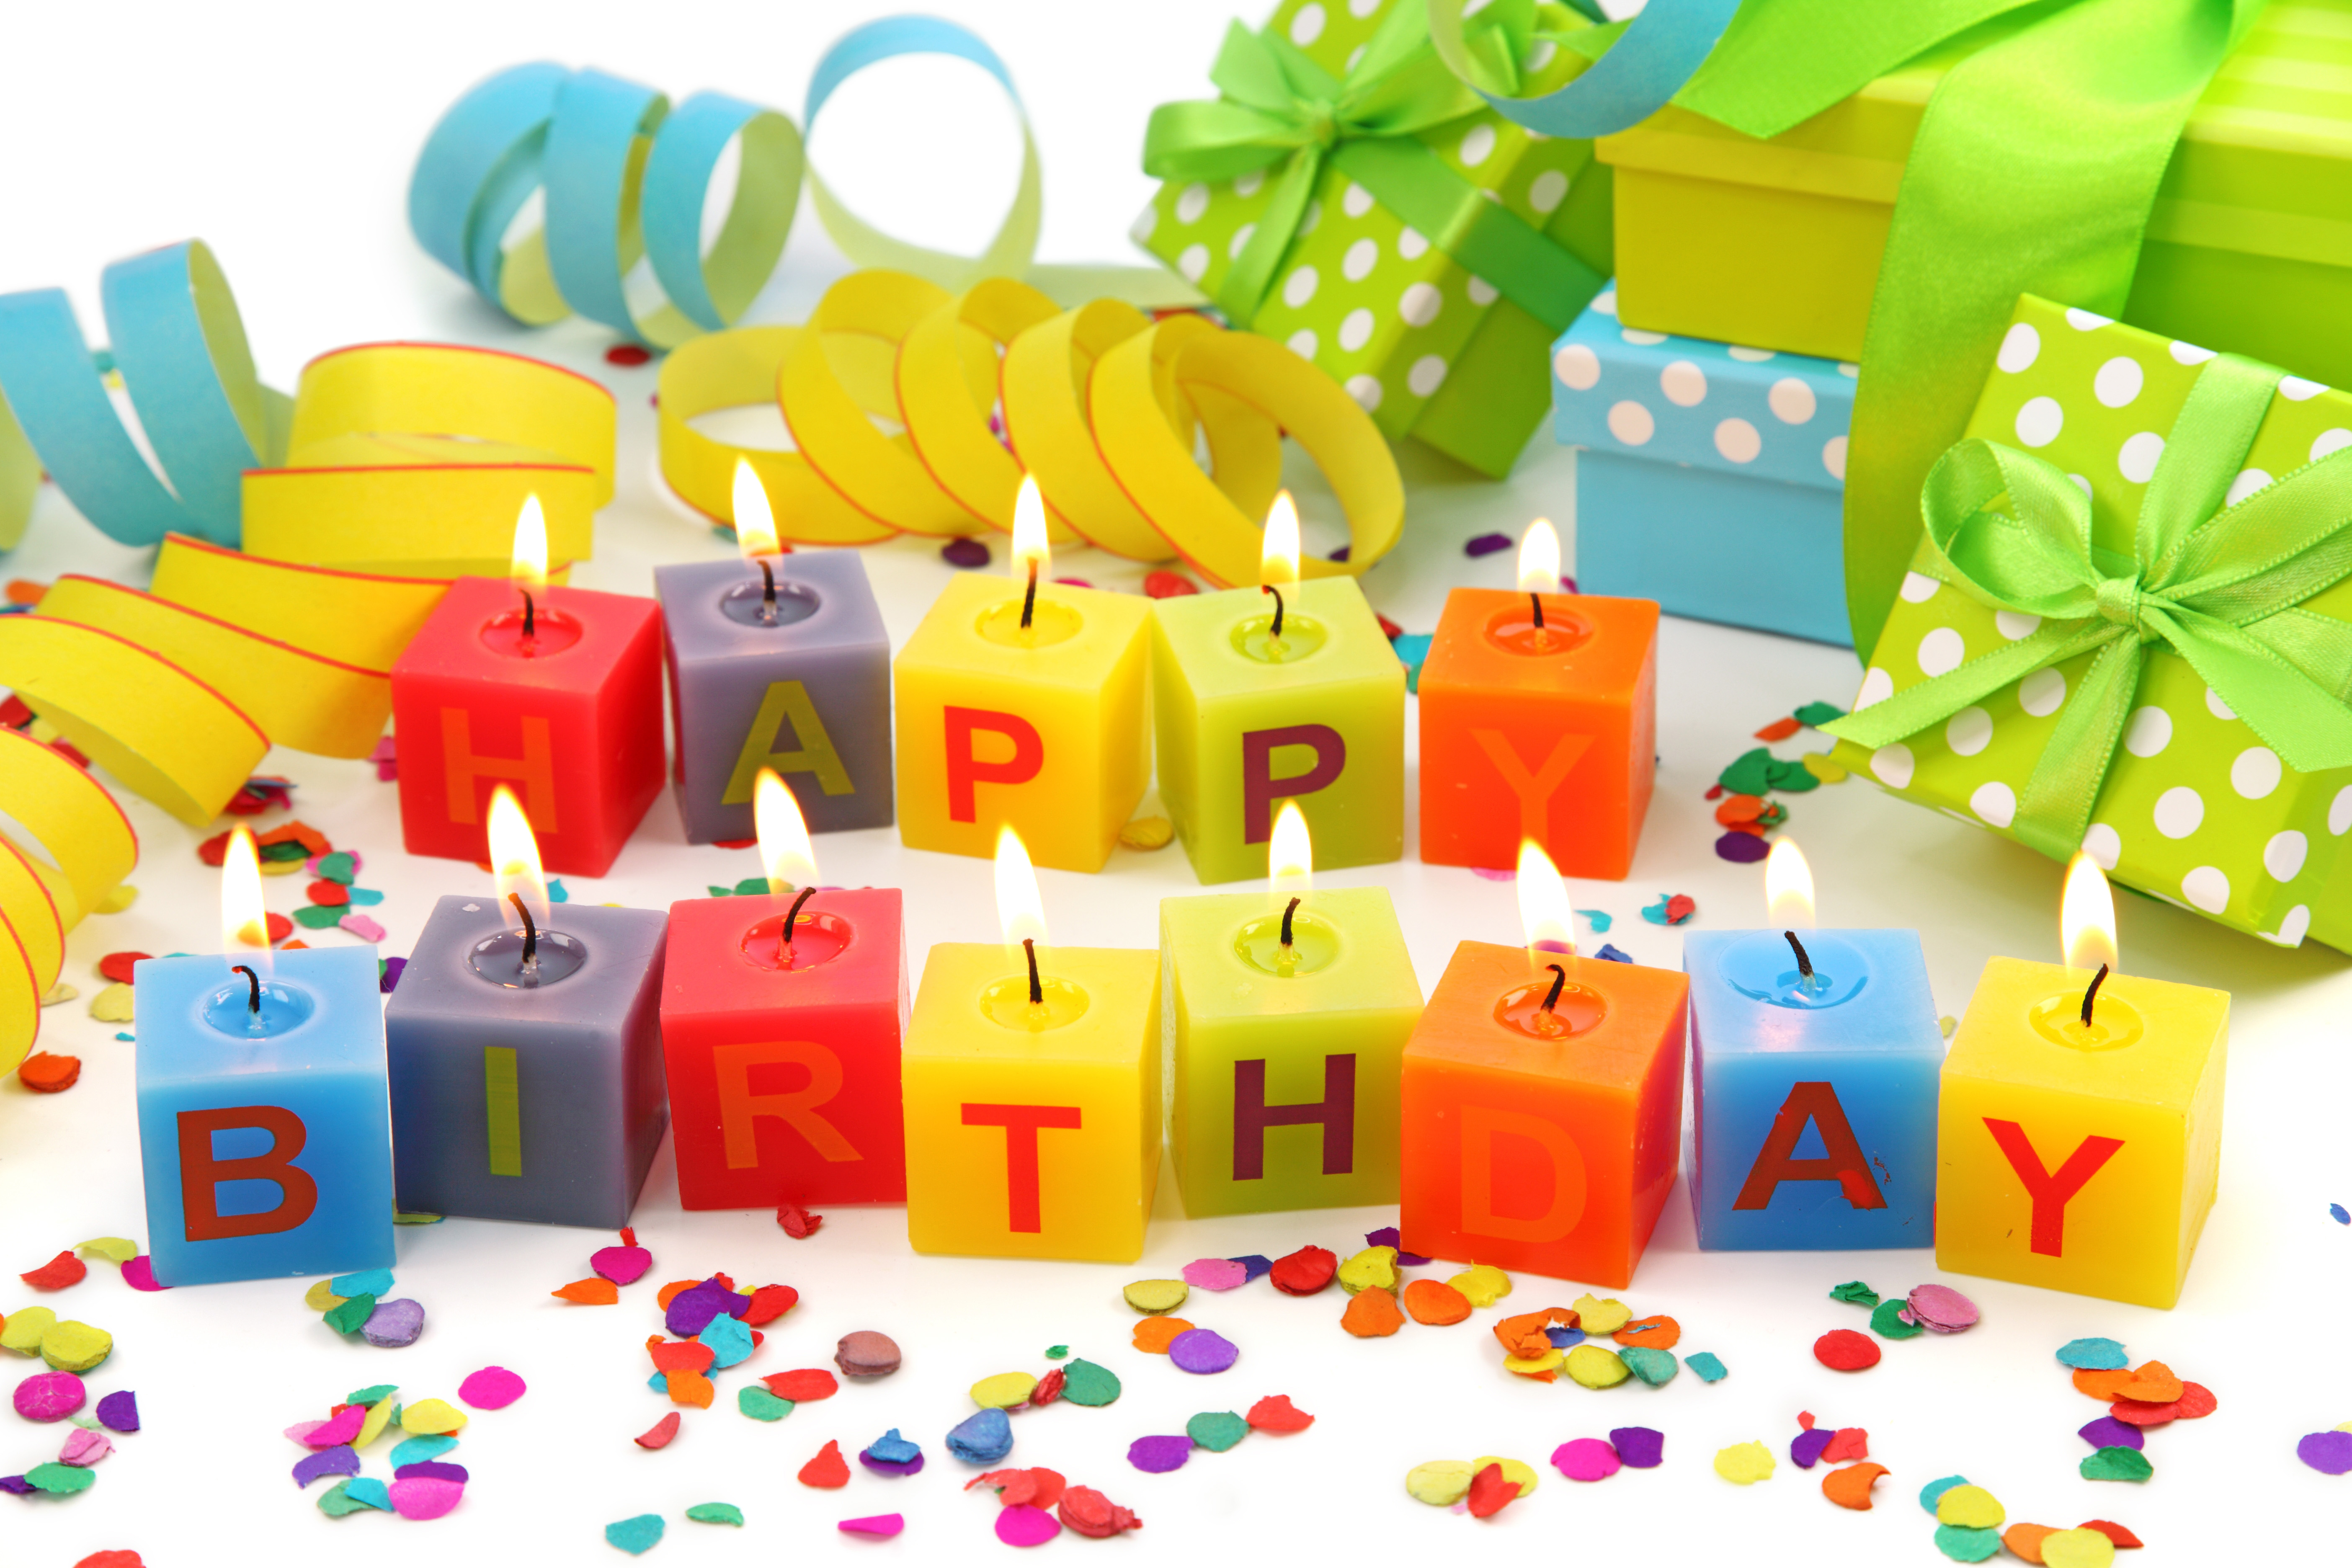 Happy Birthday Desktop Wallpaper Image Amp Pictures Becuo